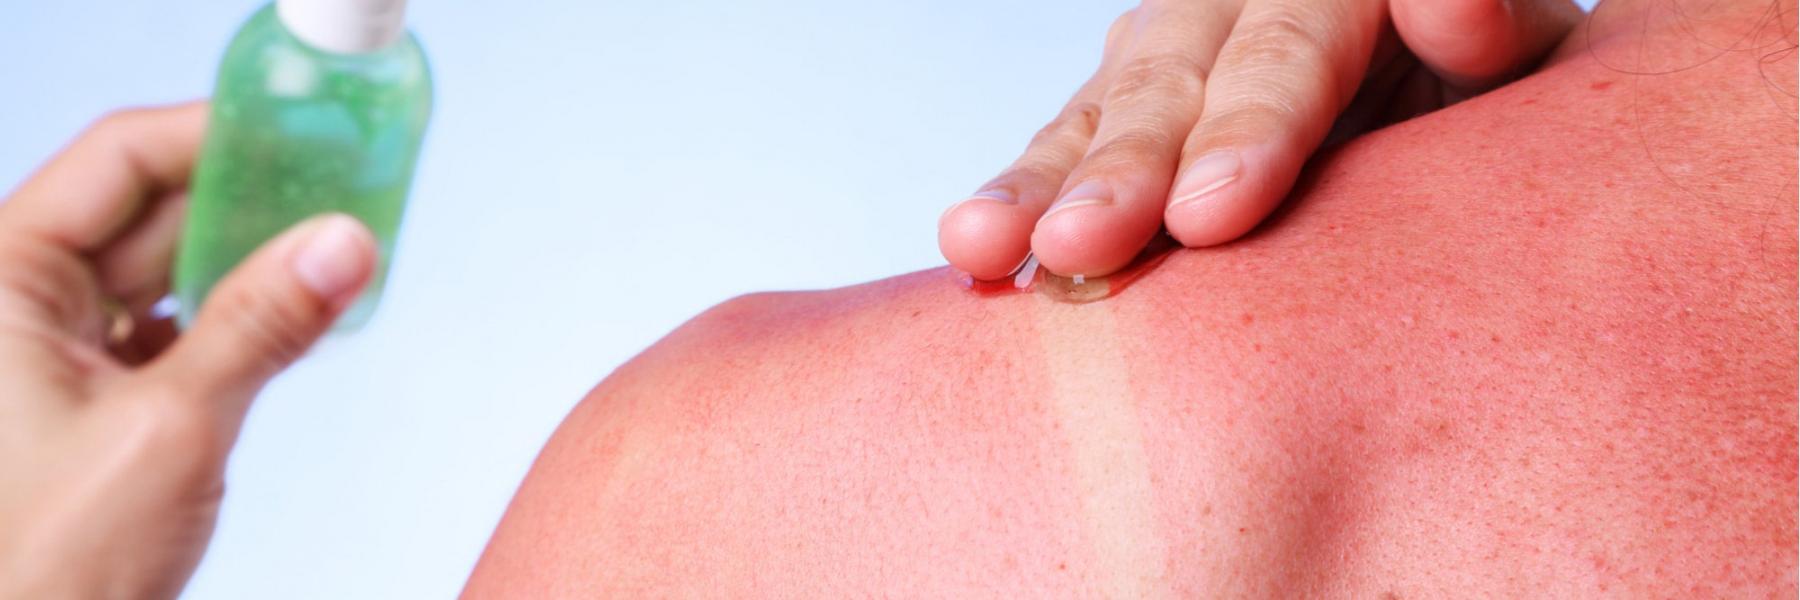 علاجات منزلية لمعالجة أضرار أشعة الشمس على البشرة والشعر